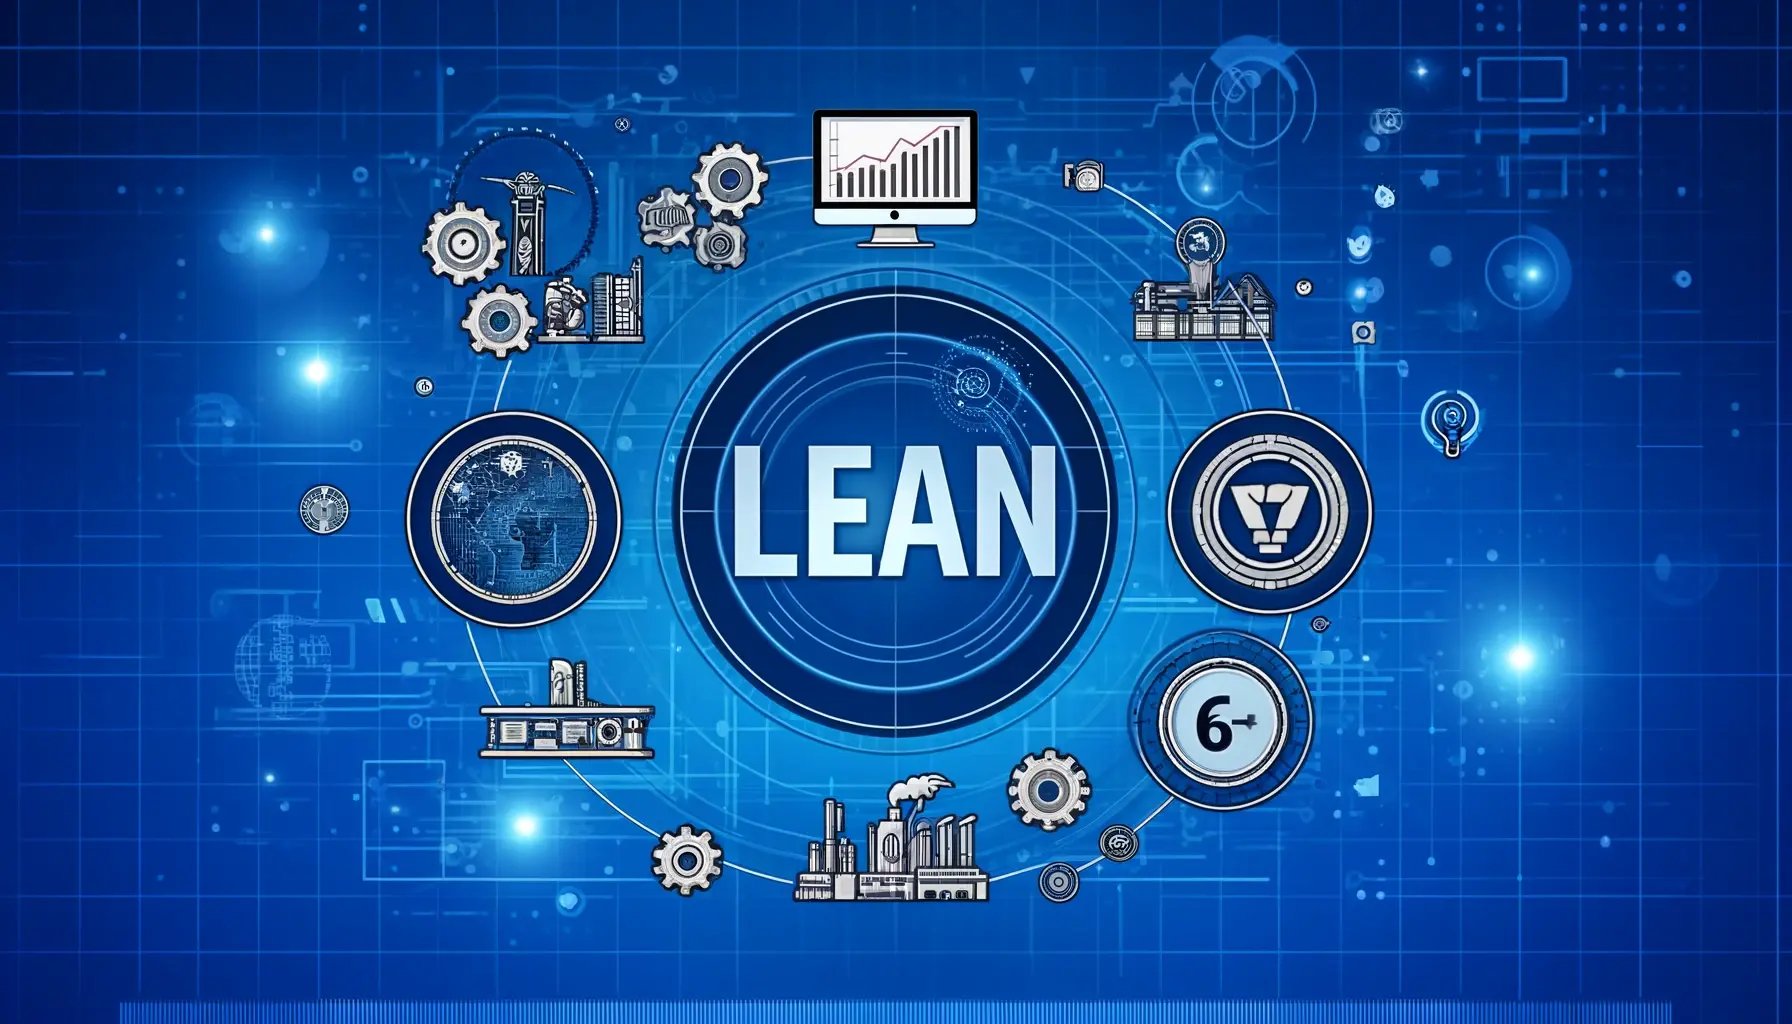 Lean-Management-Methods-Principles